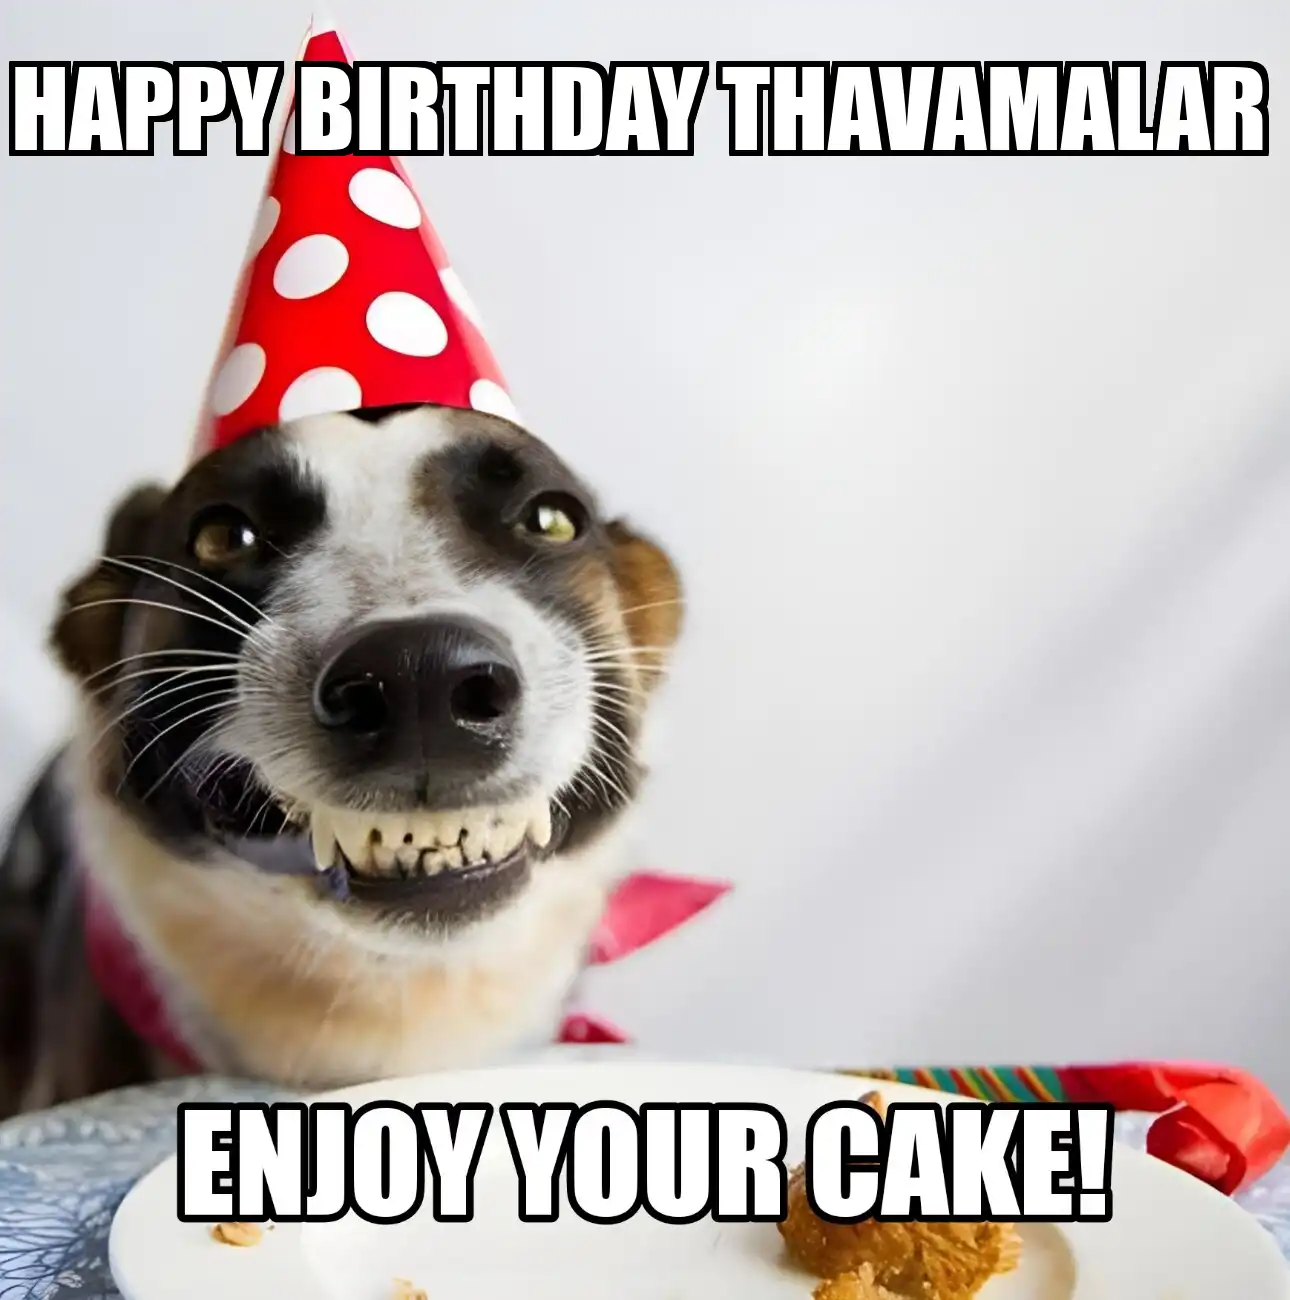 Happy Birthday Thavamalar Enjoy Your Cake Dog Meme